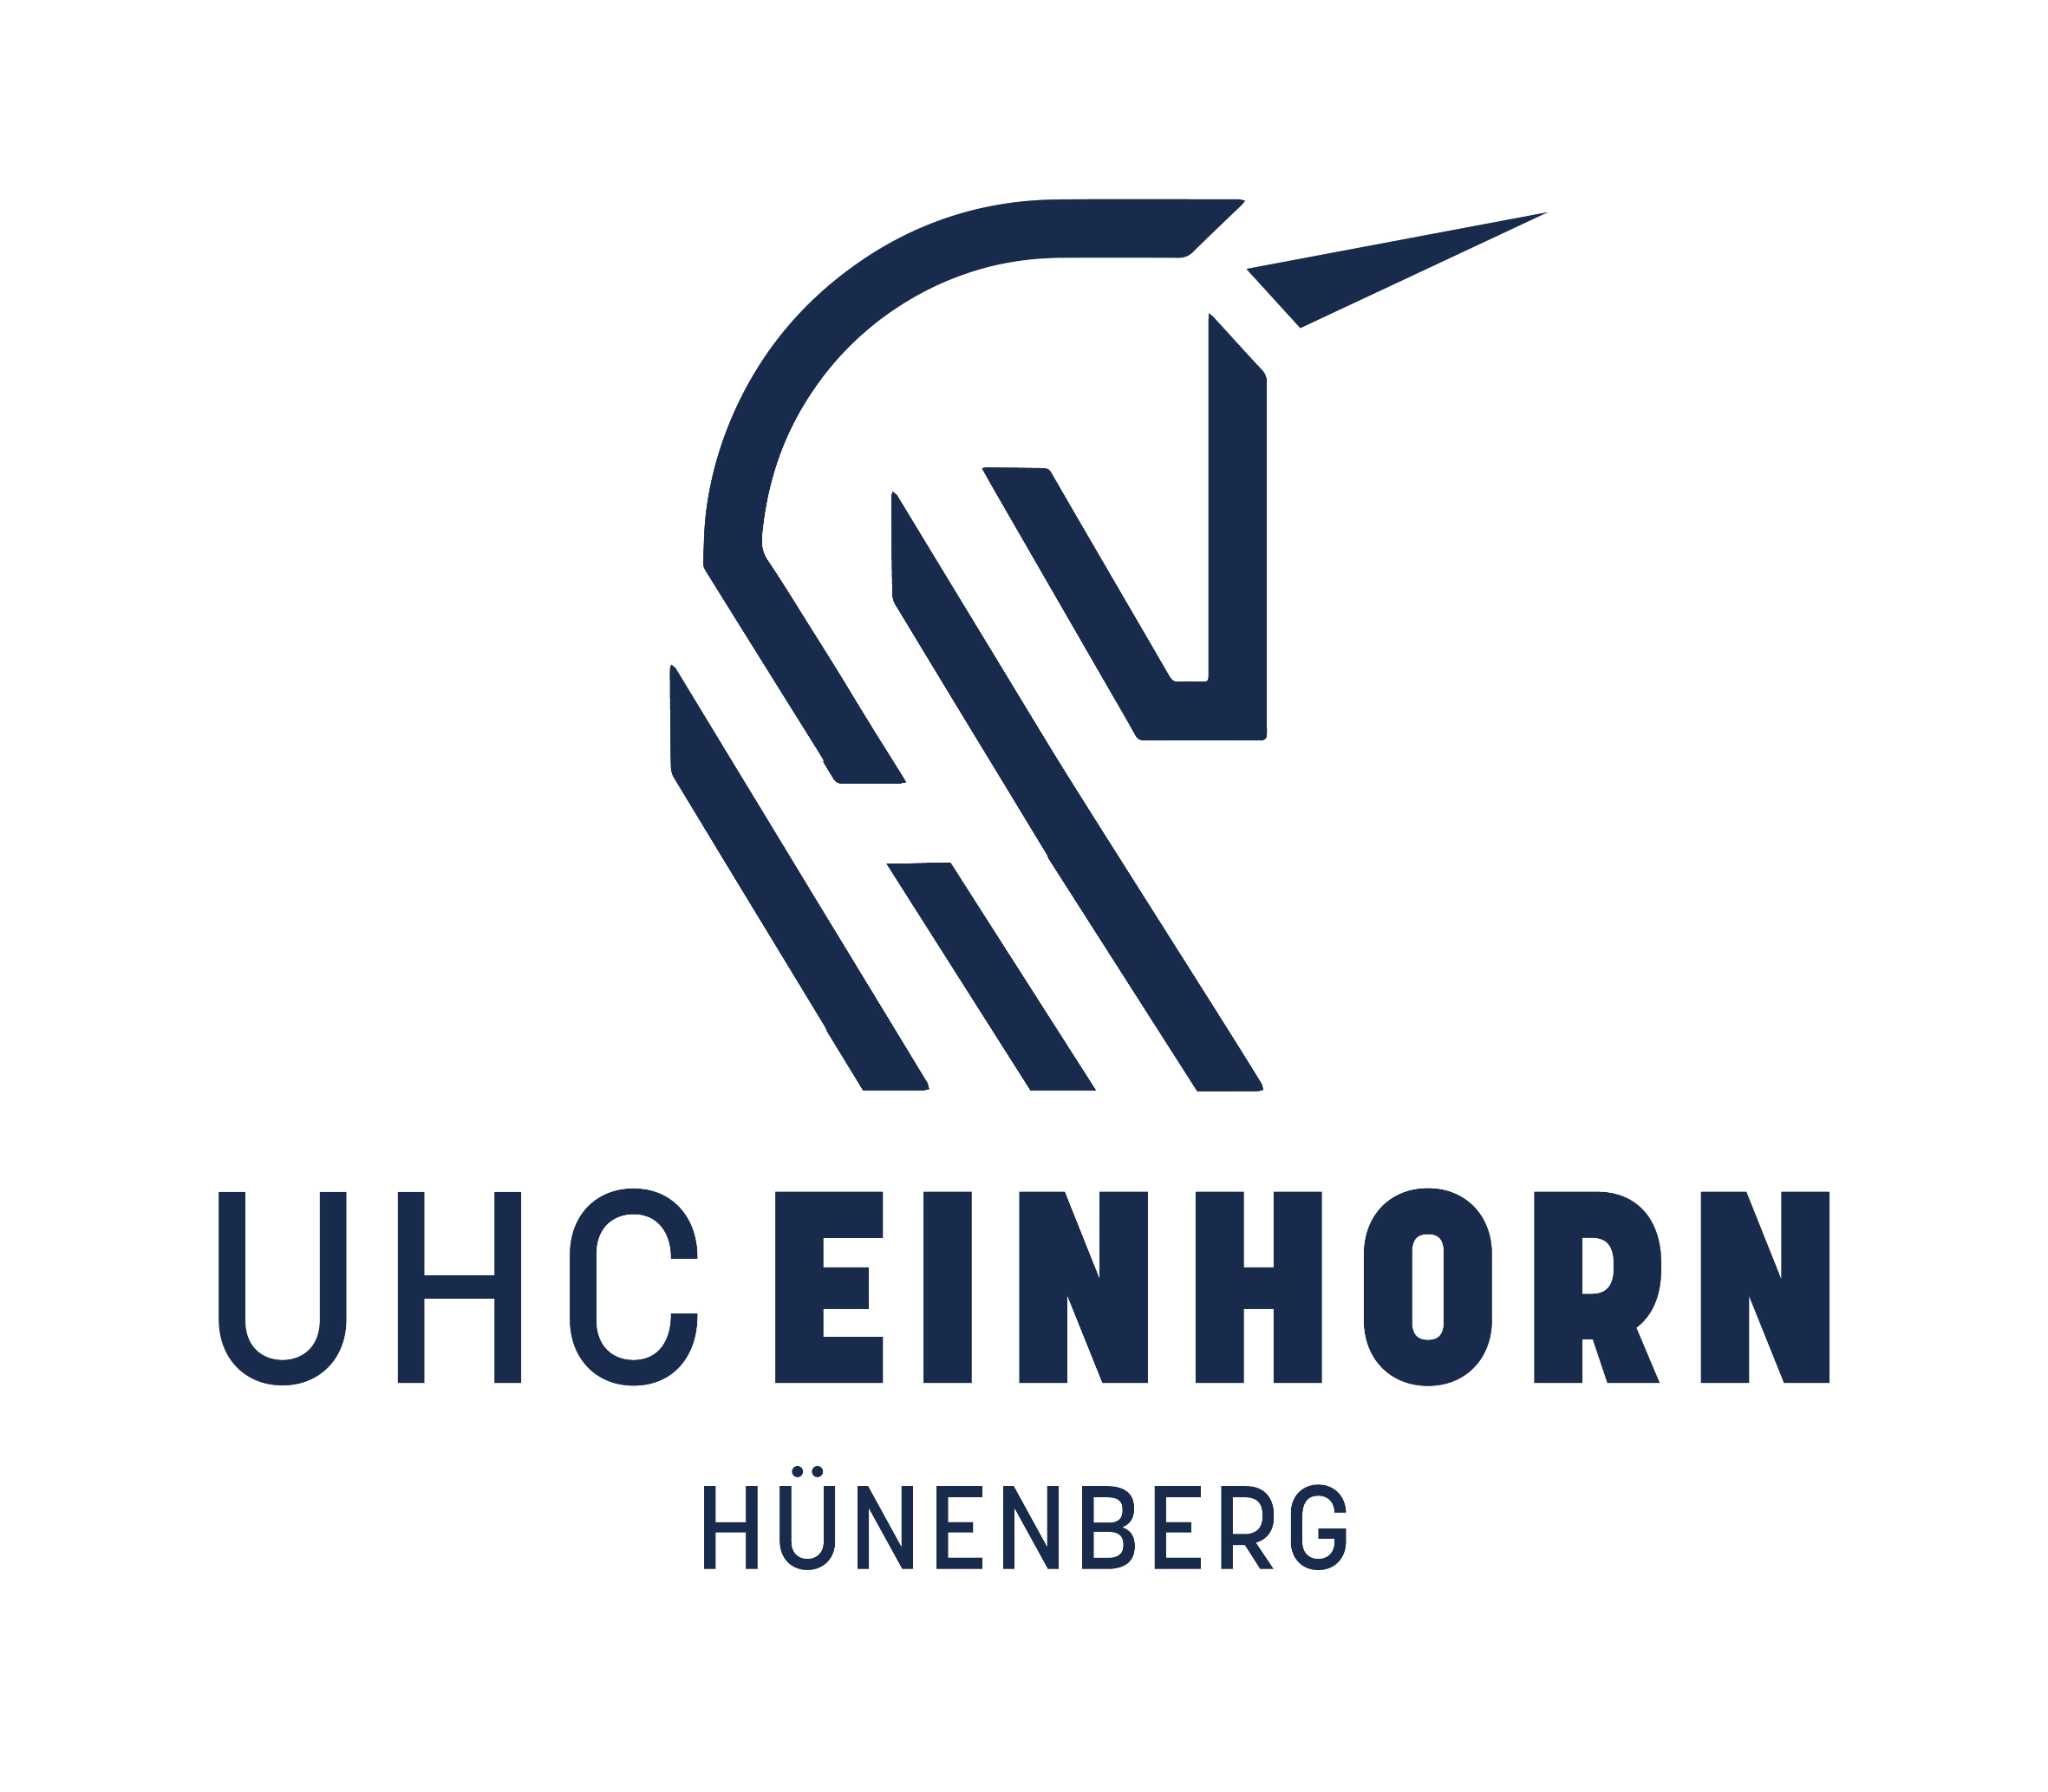 UHC Einhorn Hünenberg